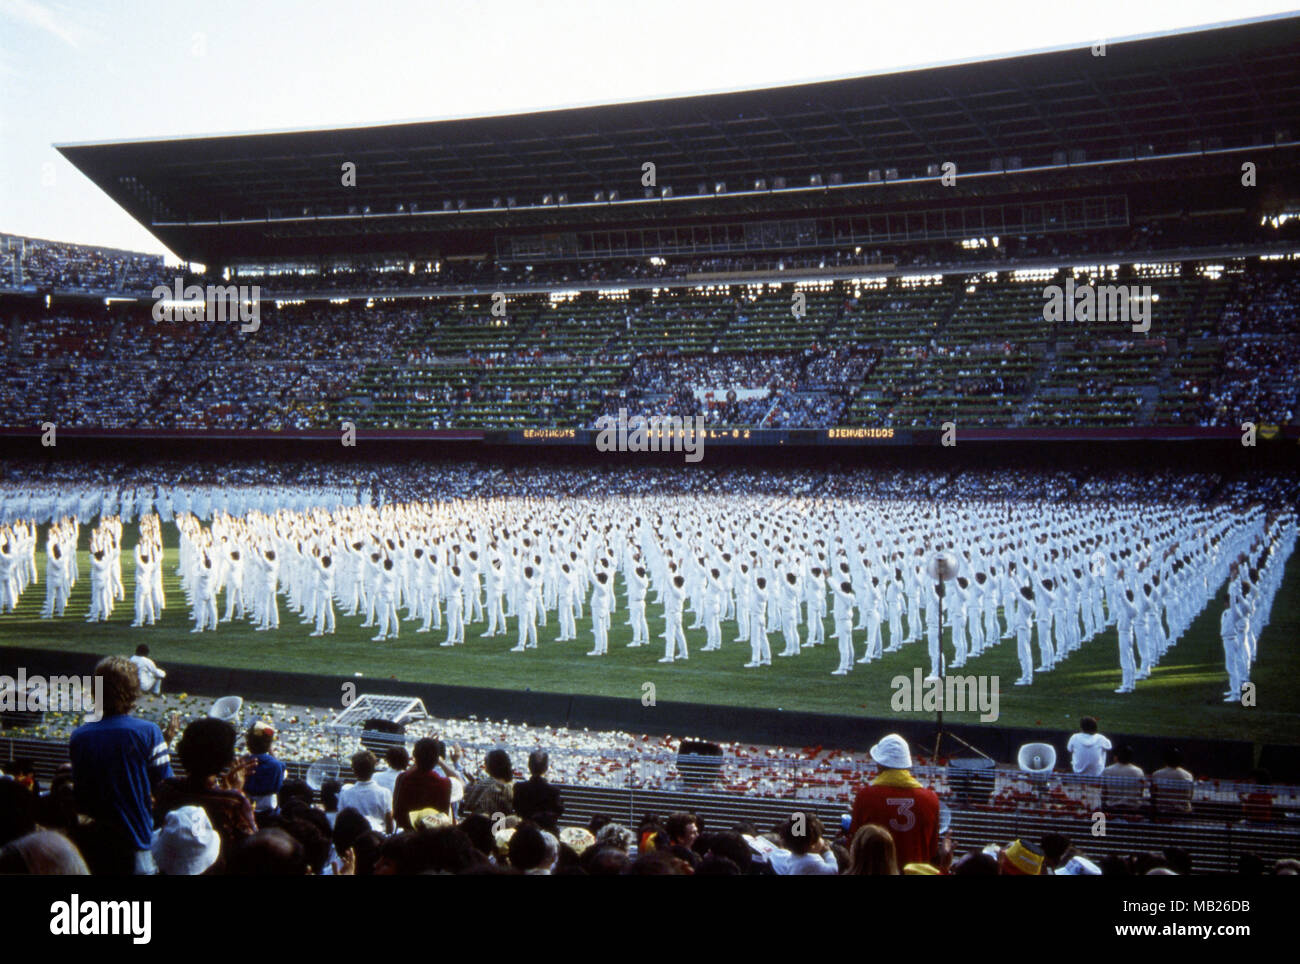 FIFA World Cup - Espana 1982 (Spain 1982) 13.6.1982, Camp Nou, Barcelona